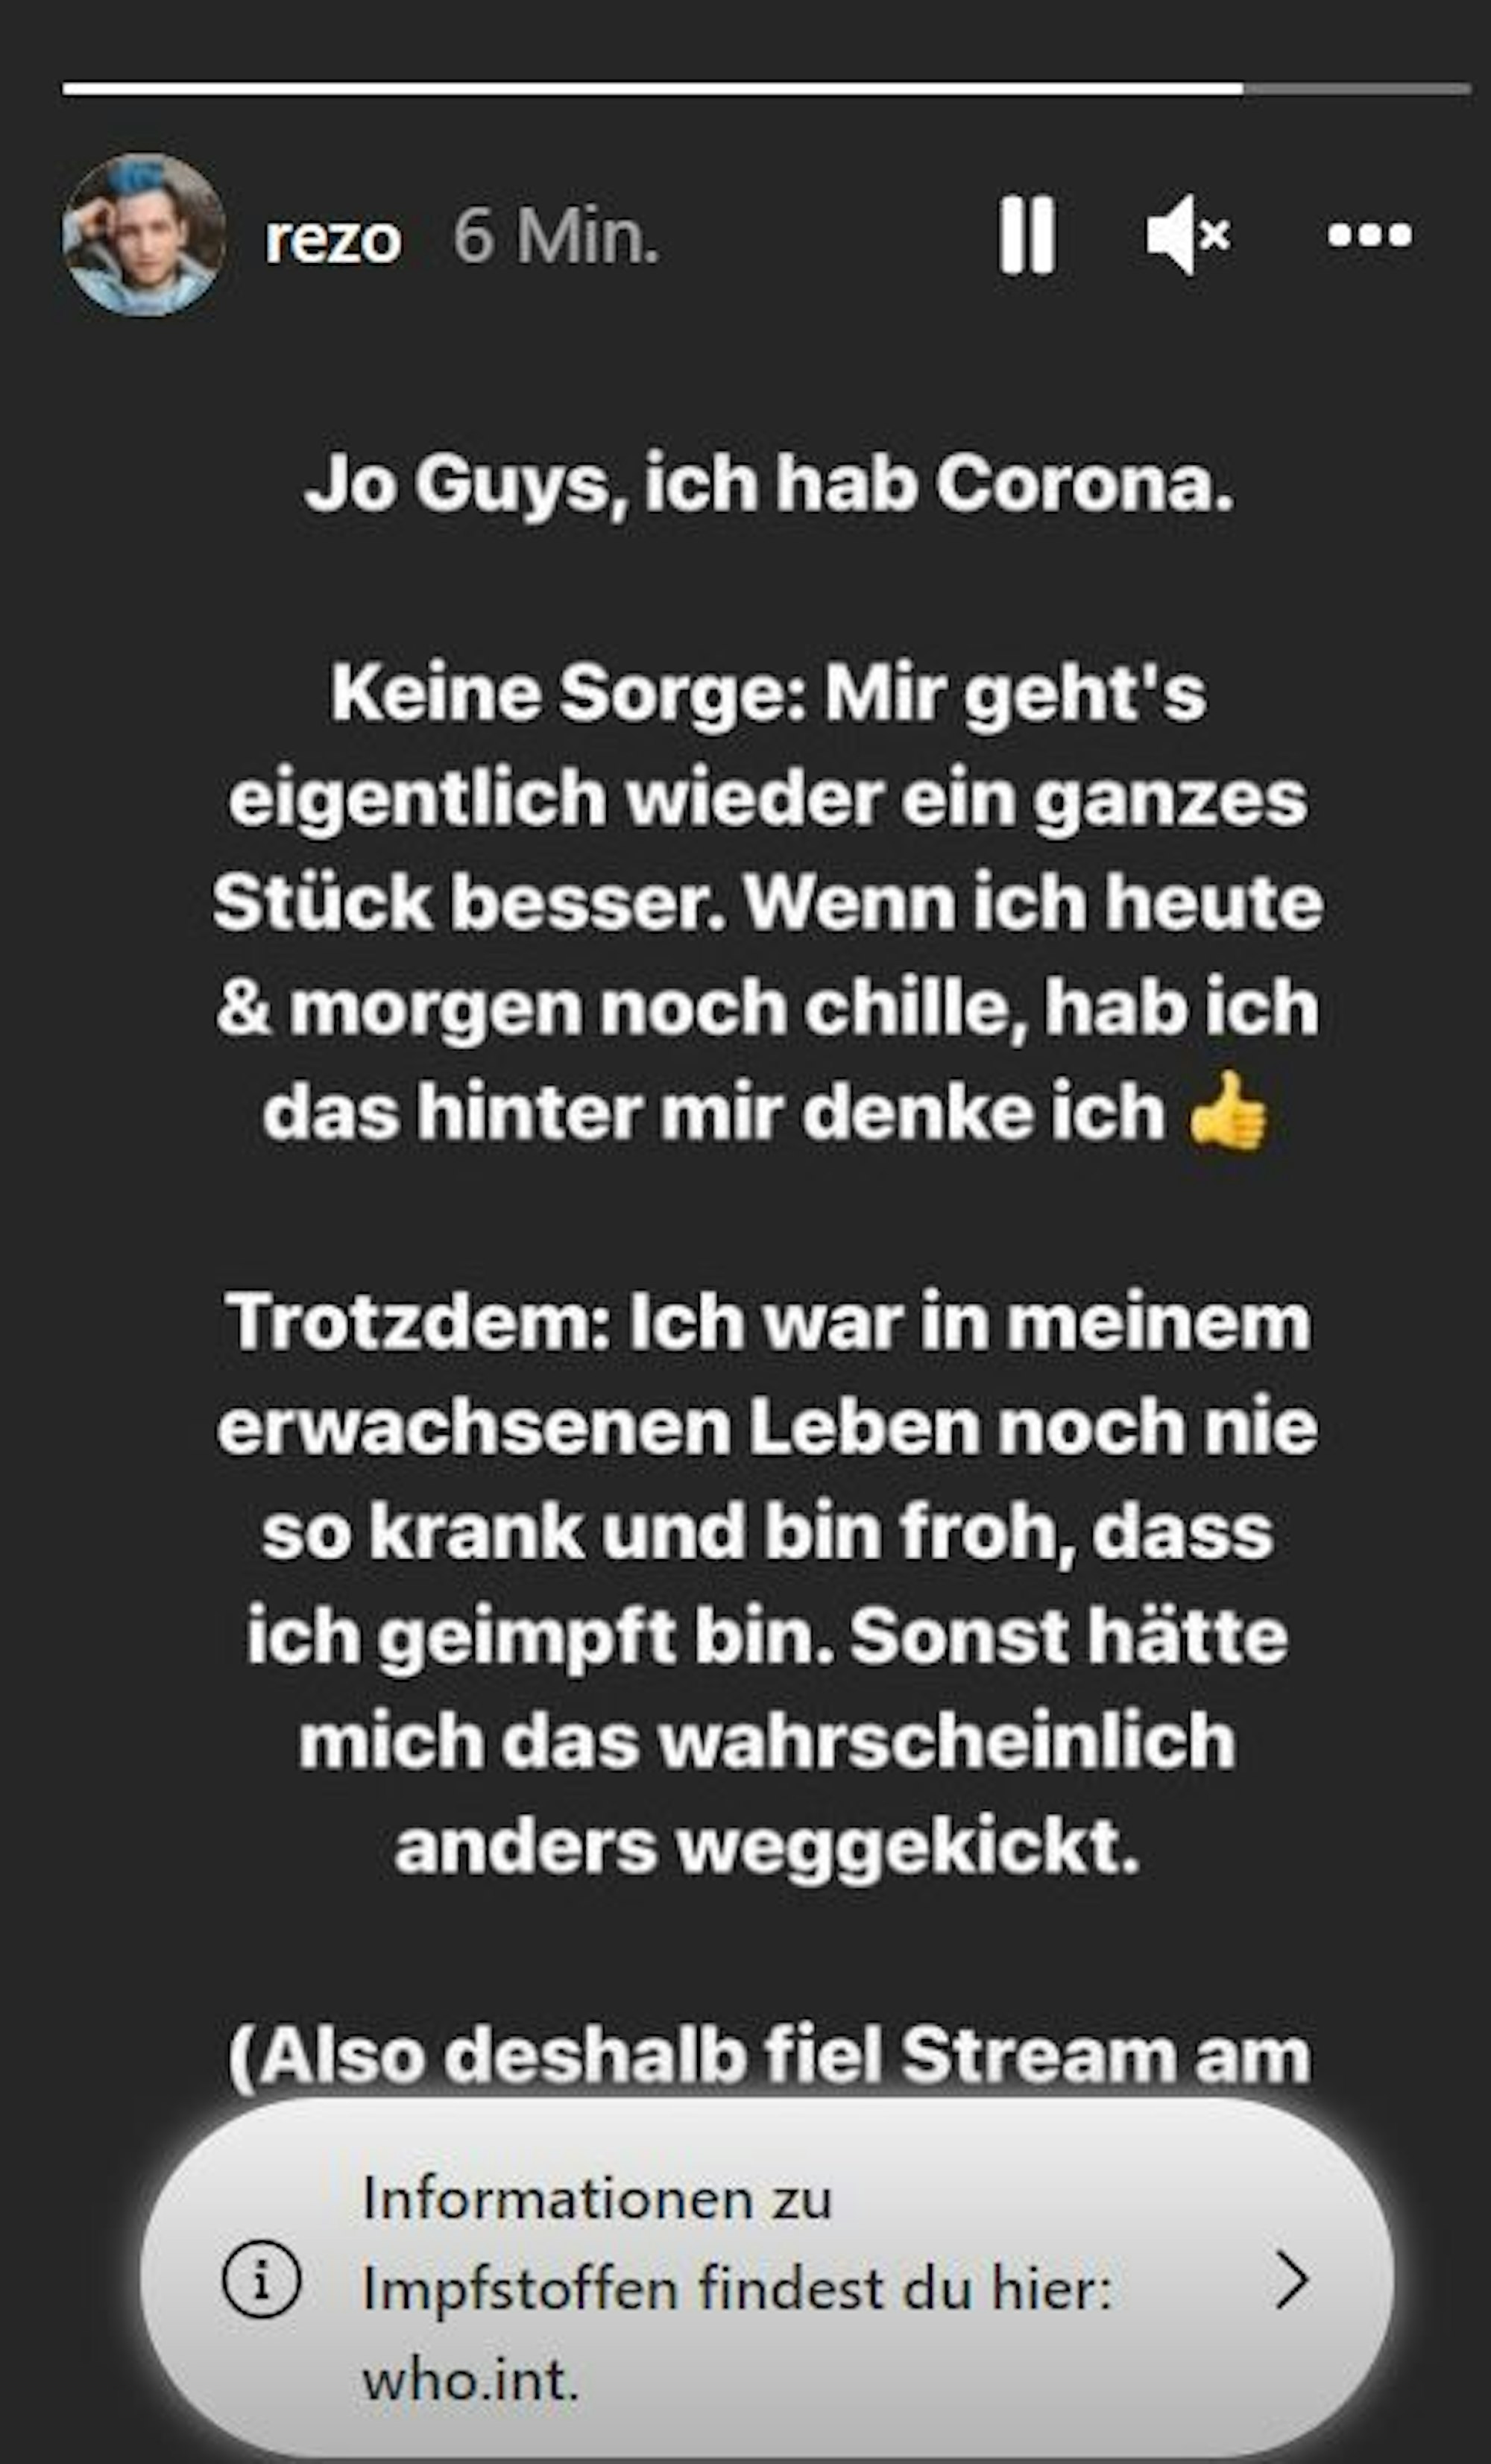 In seiner Instagram-Story hat der YouTuber Rezo am Sonntag, 7. November erklärt, dass er an Corona erkrankt ist.